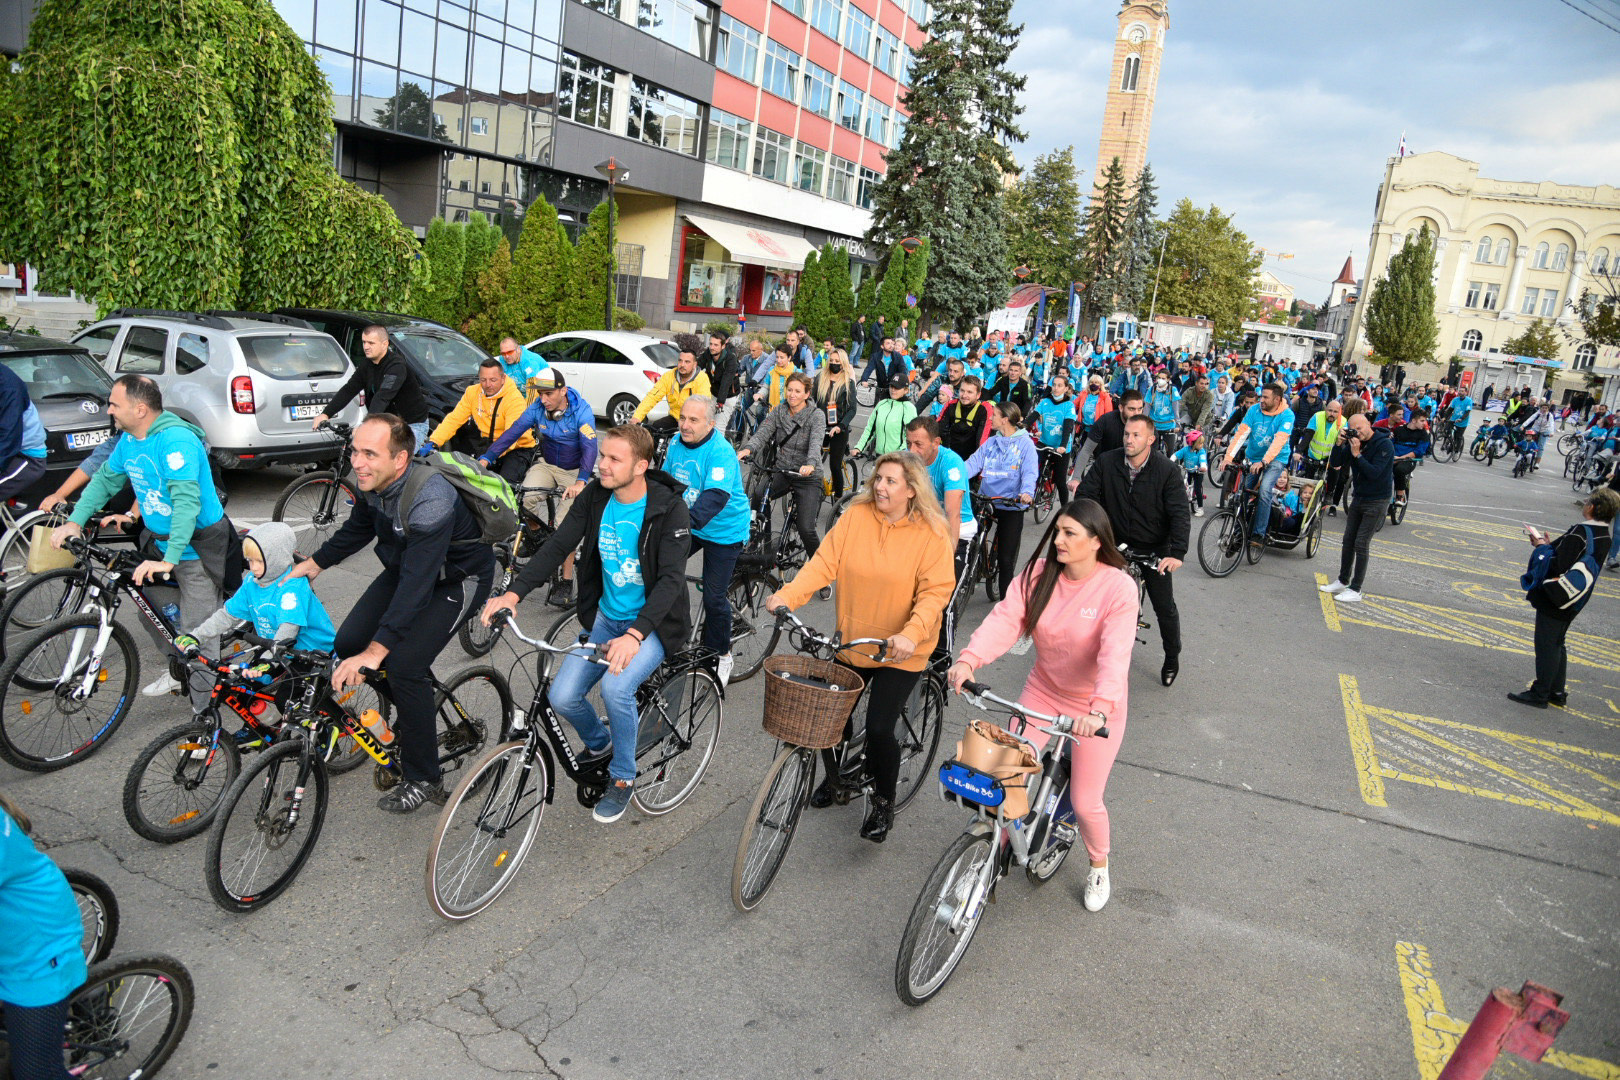 NAGRADNA IGRA Povodom Evropske sedmice mobilnosti Grad poklanja parking za bicikle